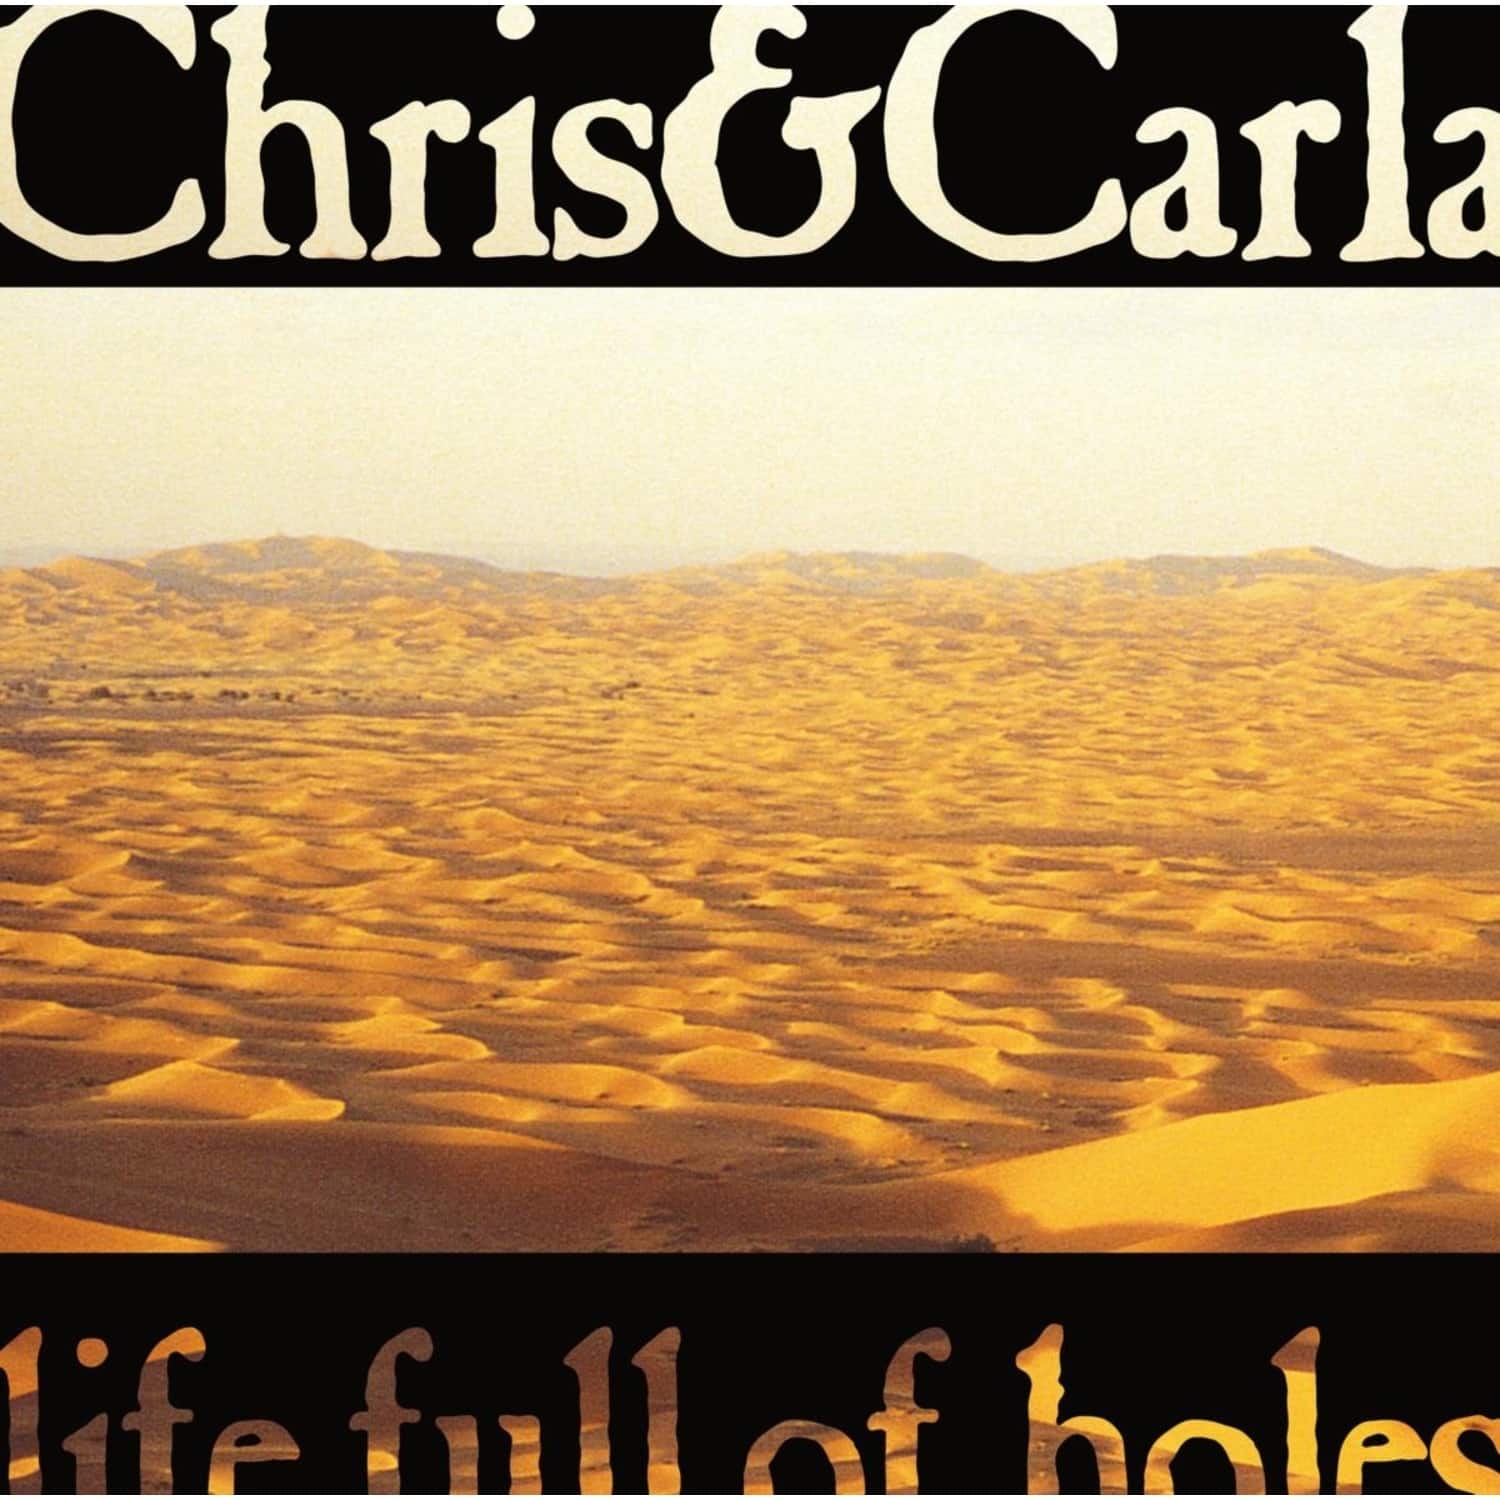 Chris & Carla - LIFE FULL OF HOLES 